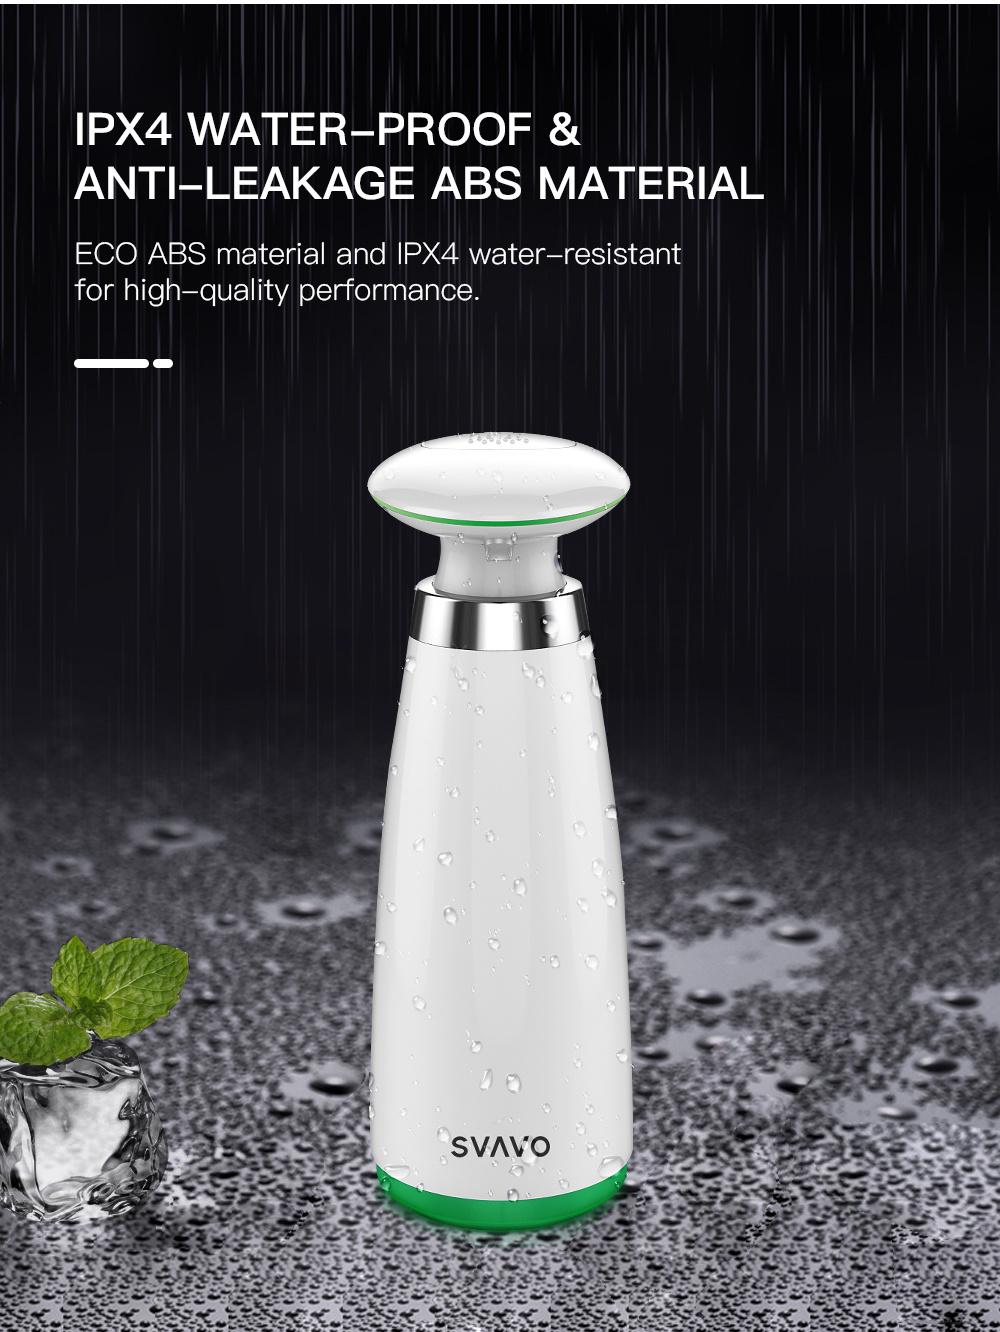 Svavo New Design Desktop Best Selling Sensor Soap Dispensers